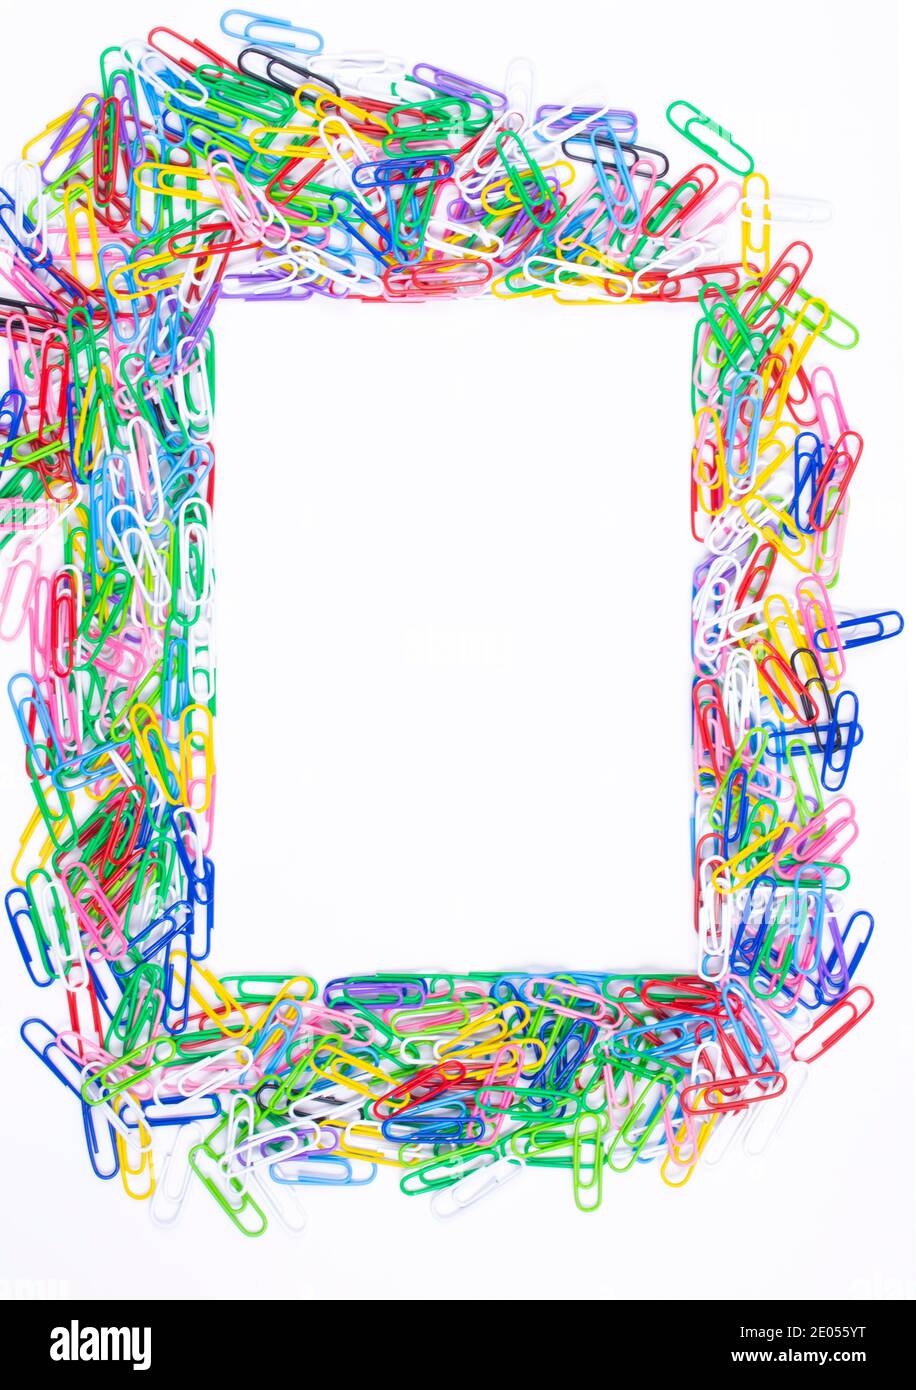 Cornice composta da ritagli di carta colorati su sfondo bianco, vista dall'alto con spazio per testo o creatività. Foto Stock